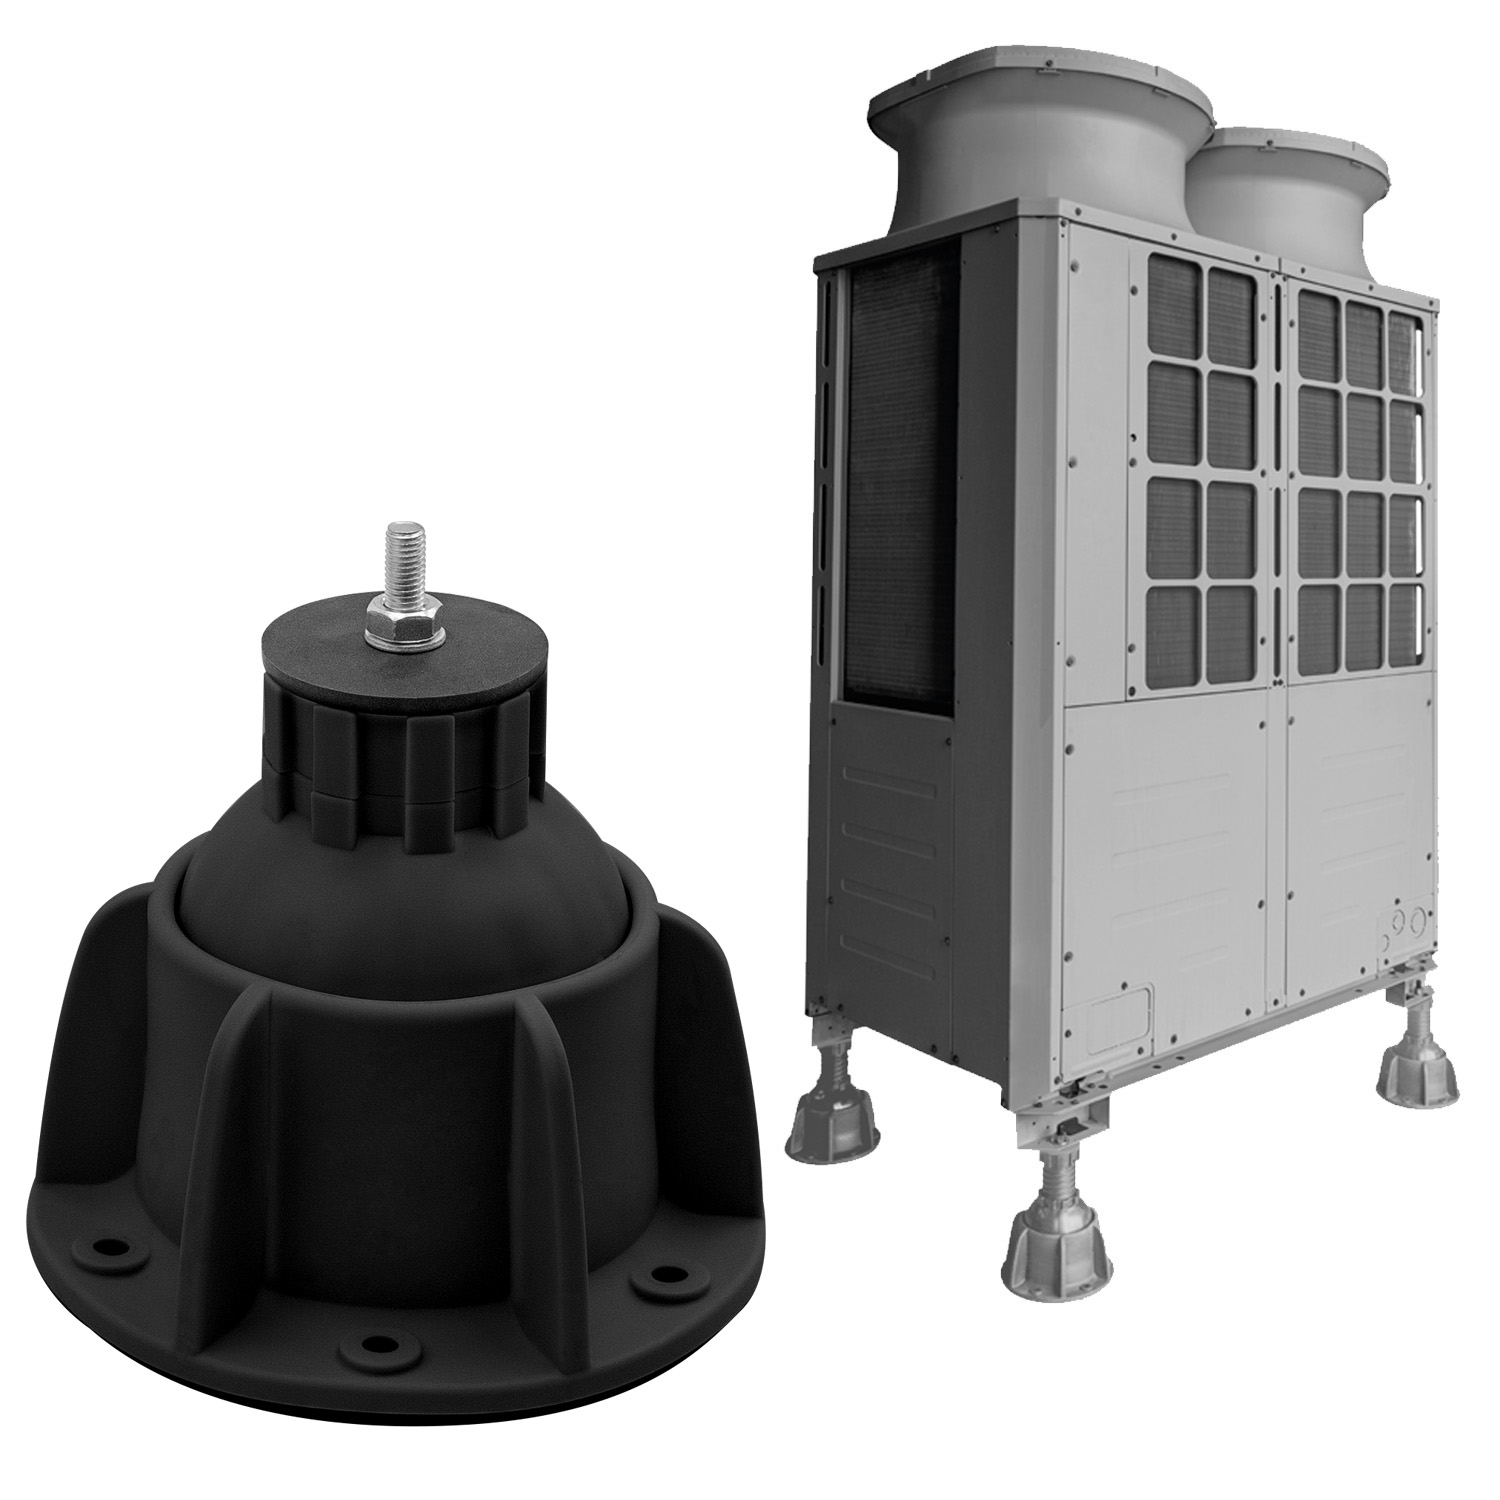 Steady - supporto a pavimento per unità esterne AC, pompe di calore e Refrigerazione - portata fino a 1500 kg, inclinabile fino a 35°, rotazione a 360° - colore nero RAL9004